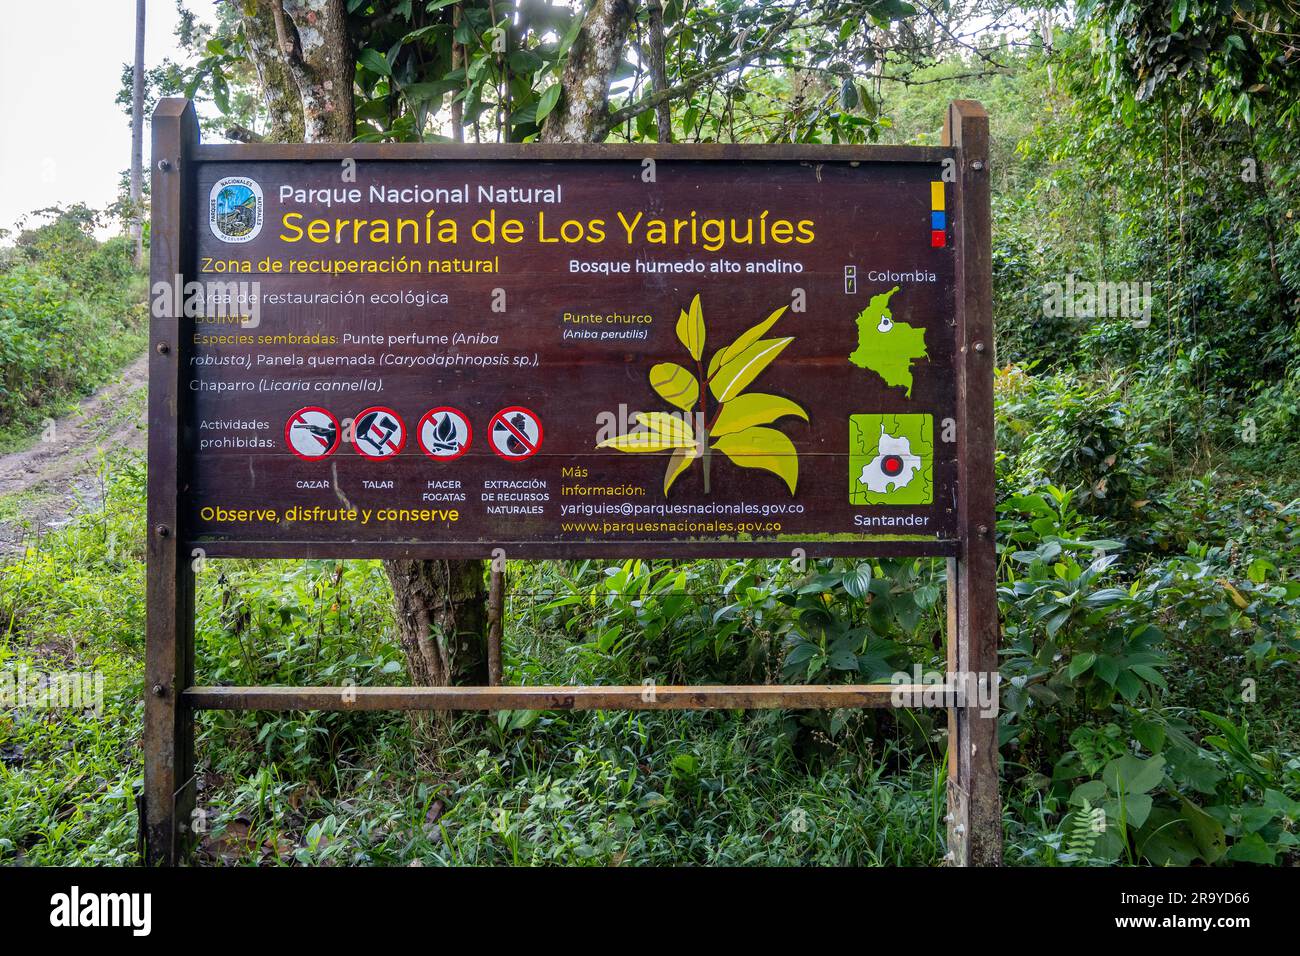 Sign and information board of Serranía De Los Yariguíes Parque Nacional Natural. Colombia, South America. Stock Photo